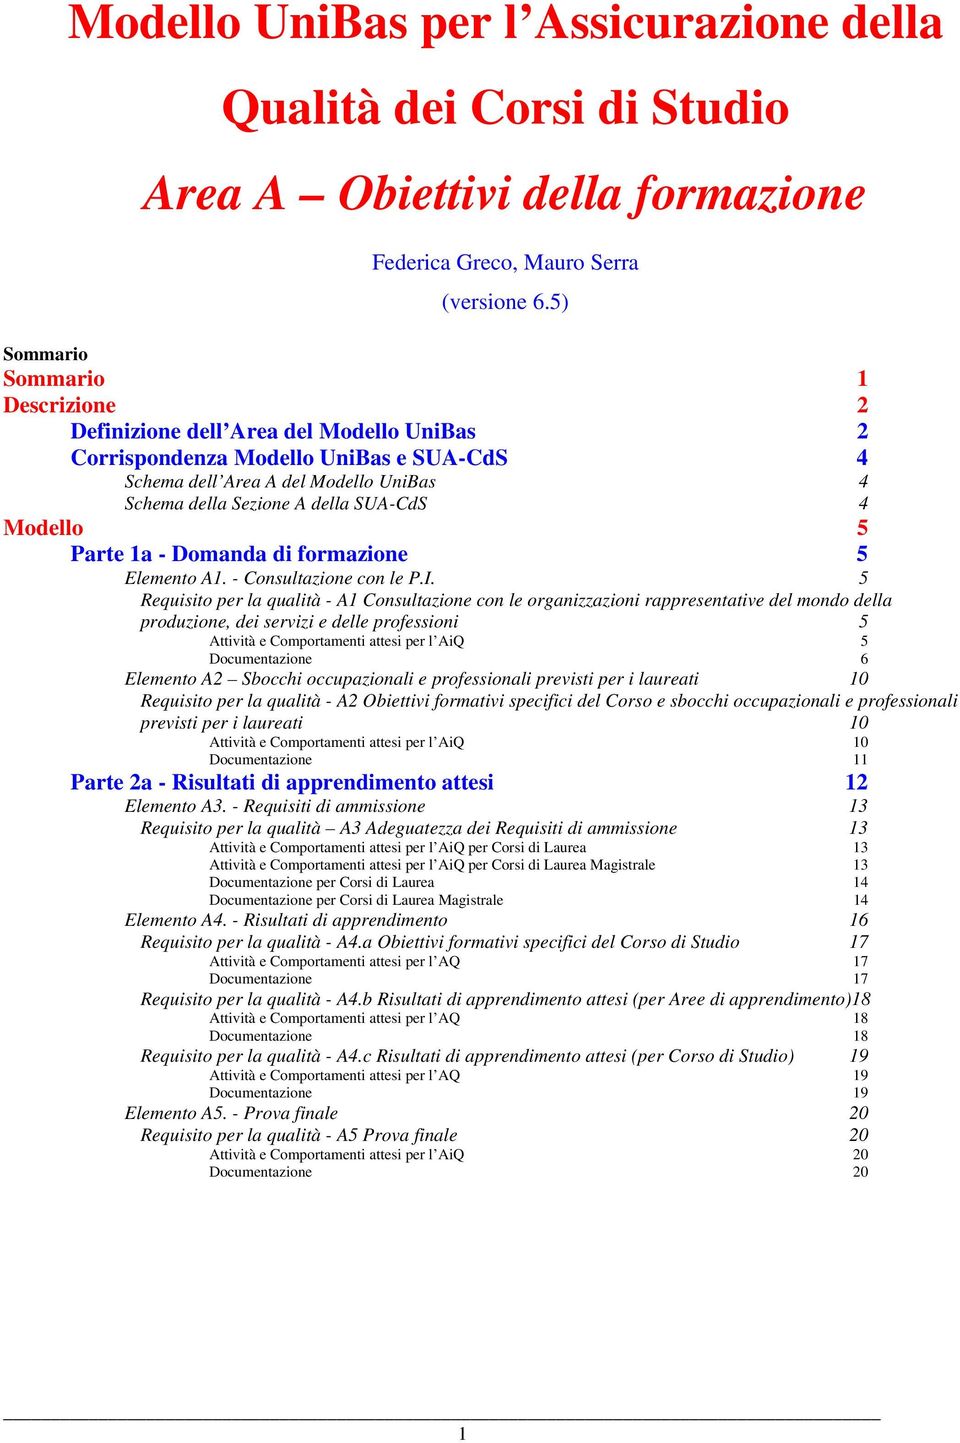 4 Modello 5 Parte 1a - Domanda di formazione 5 Elemento A1. - Consultazione con le P.I.